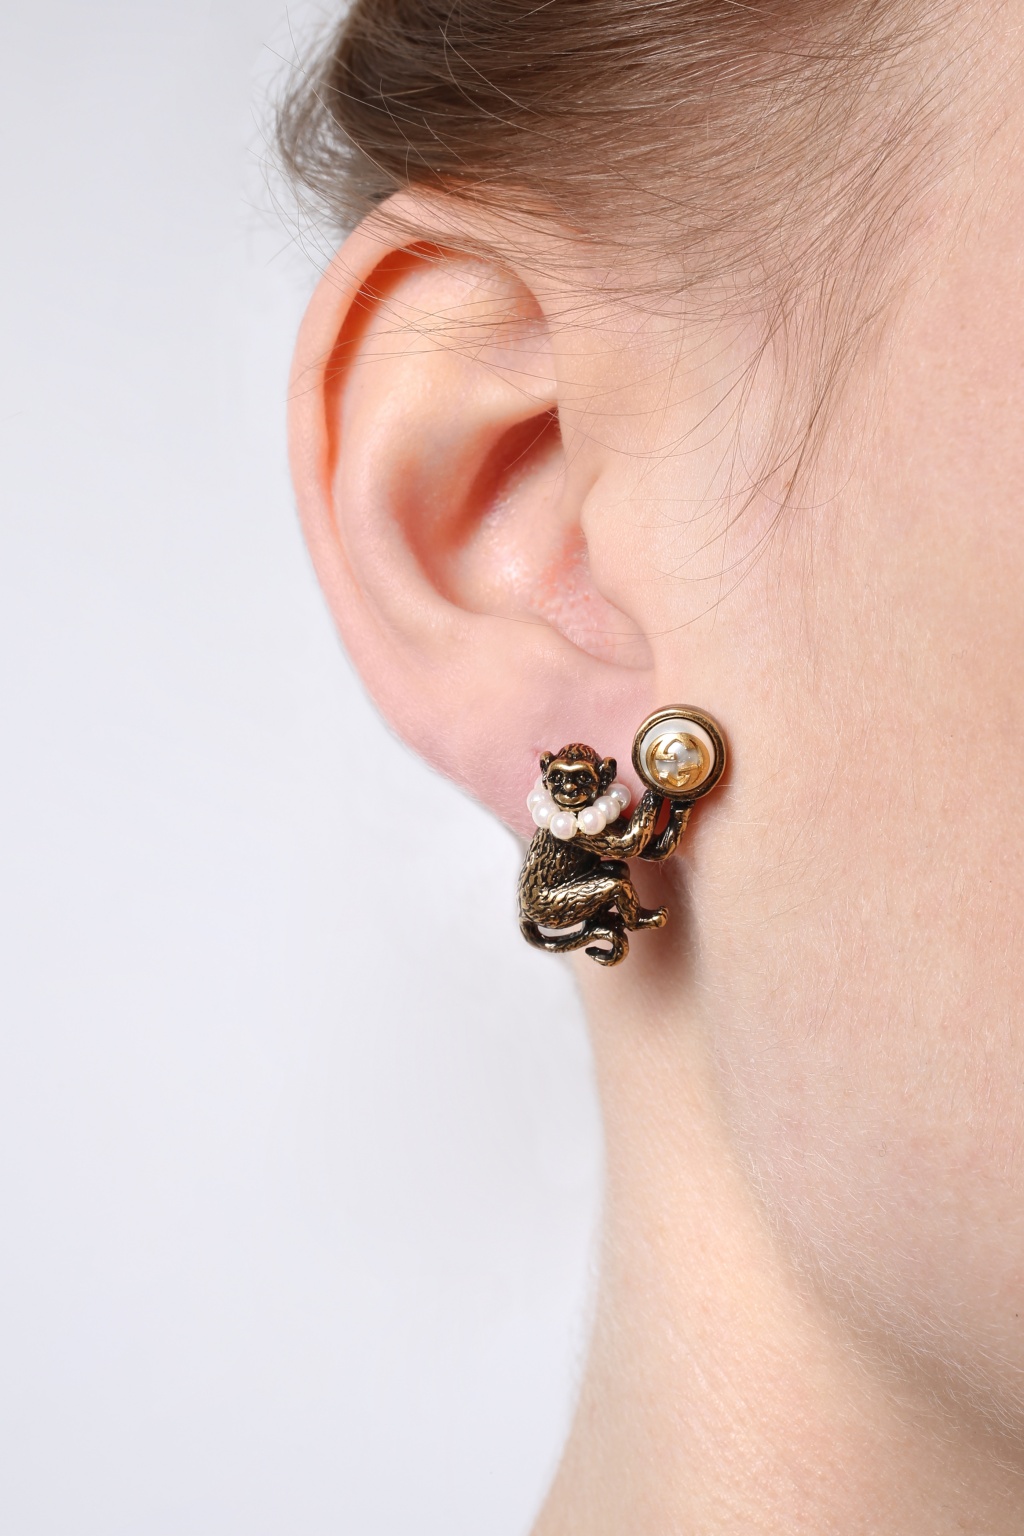 gucci monkey earrings